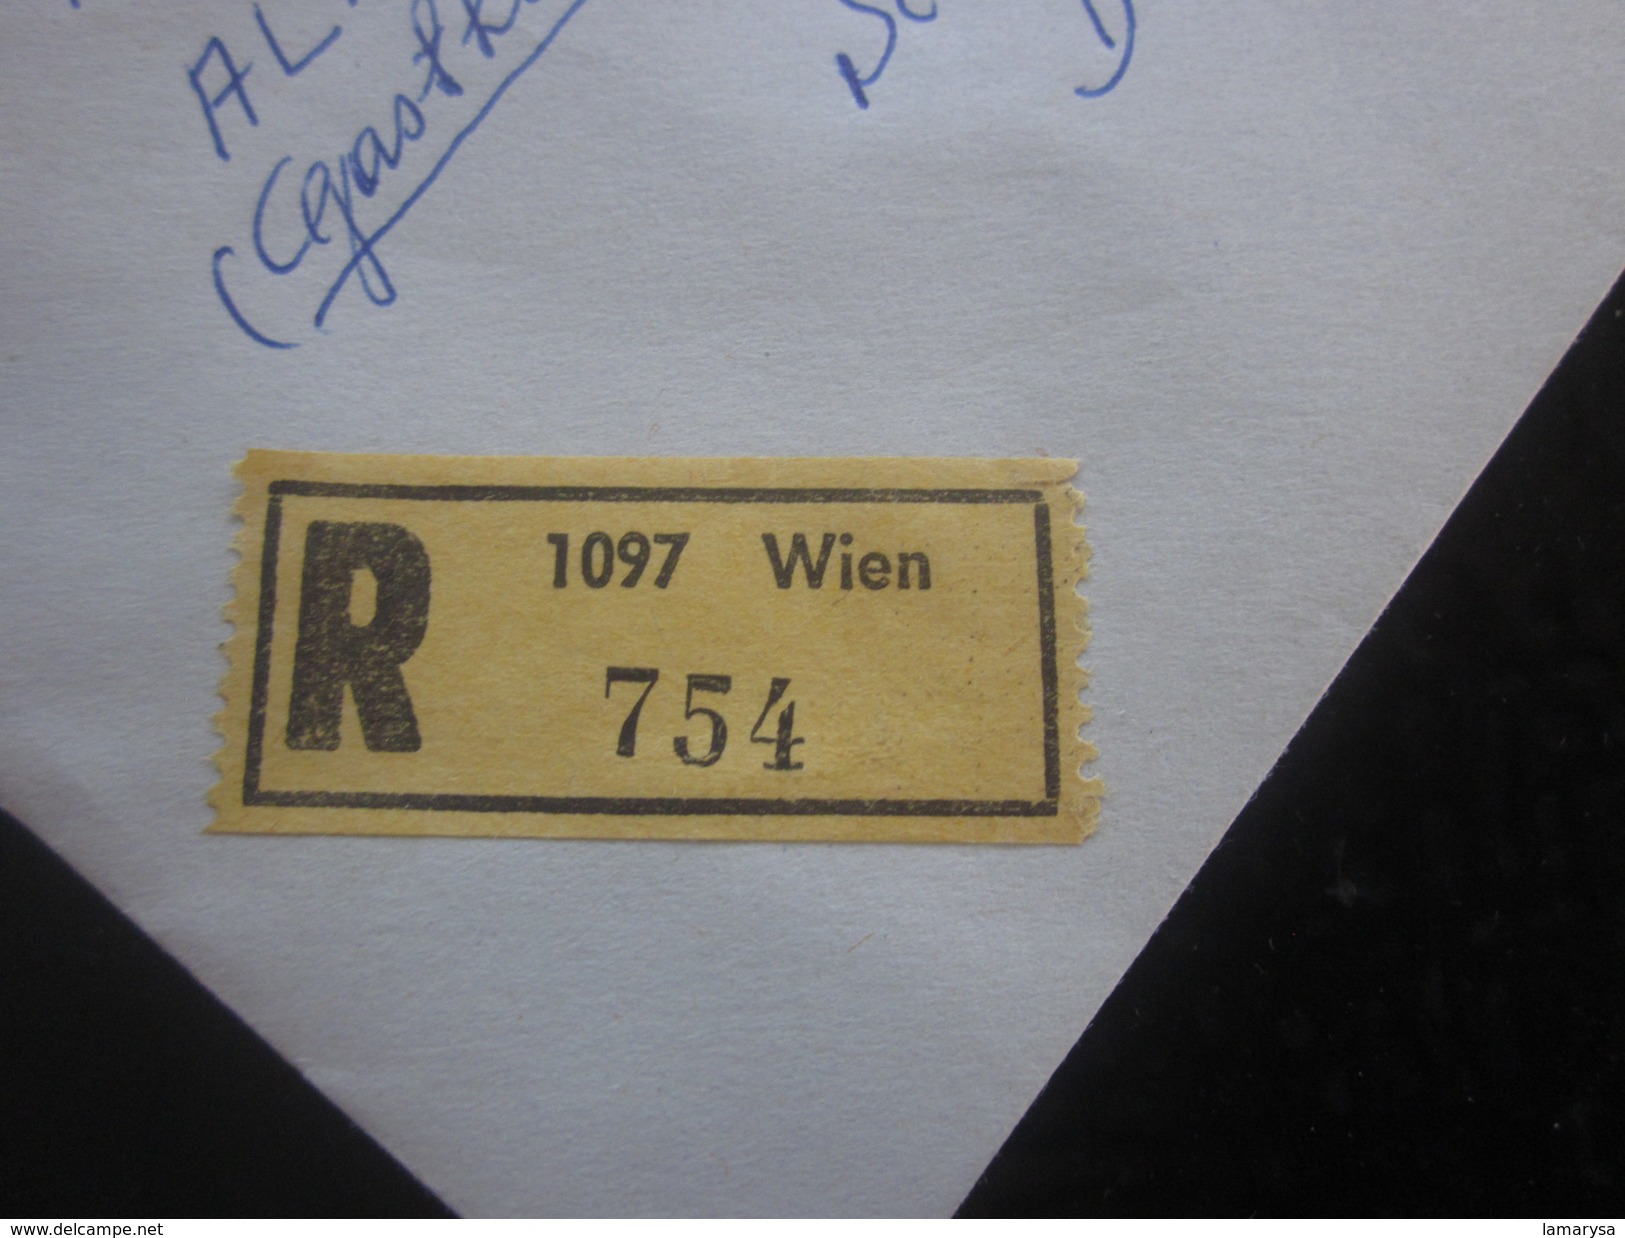 Lettre Recommandé Wien Autriche Osterreich-1961-70...2ème Rép Europe-Document-Luftpost-Avion-By Air-mail Marcophilie - Covers & Documents